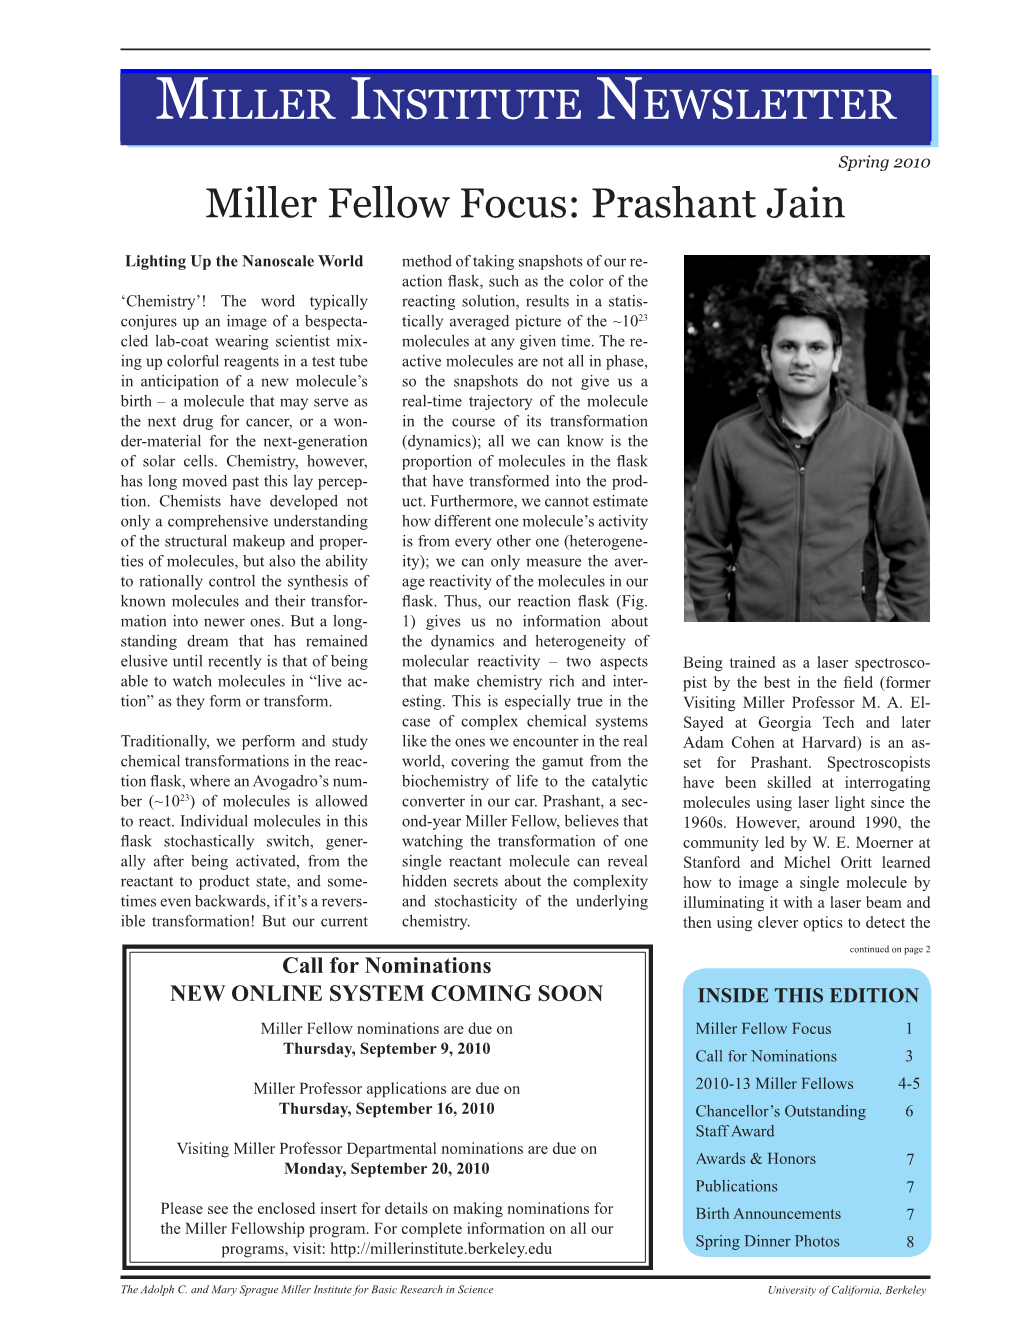 MILLER INSTITUTE NEWSLETTER Miller Fellow Focus: Prashant Jain